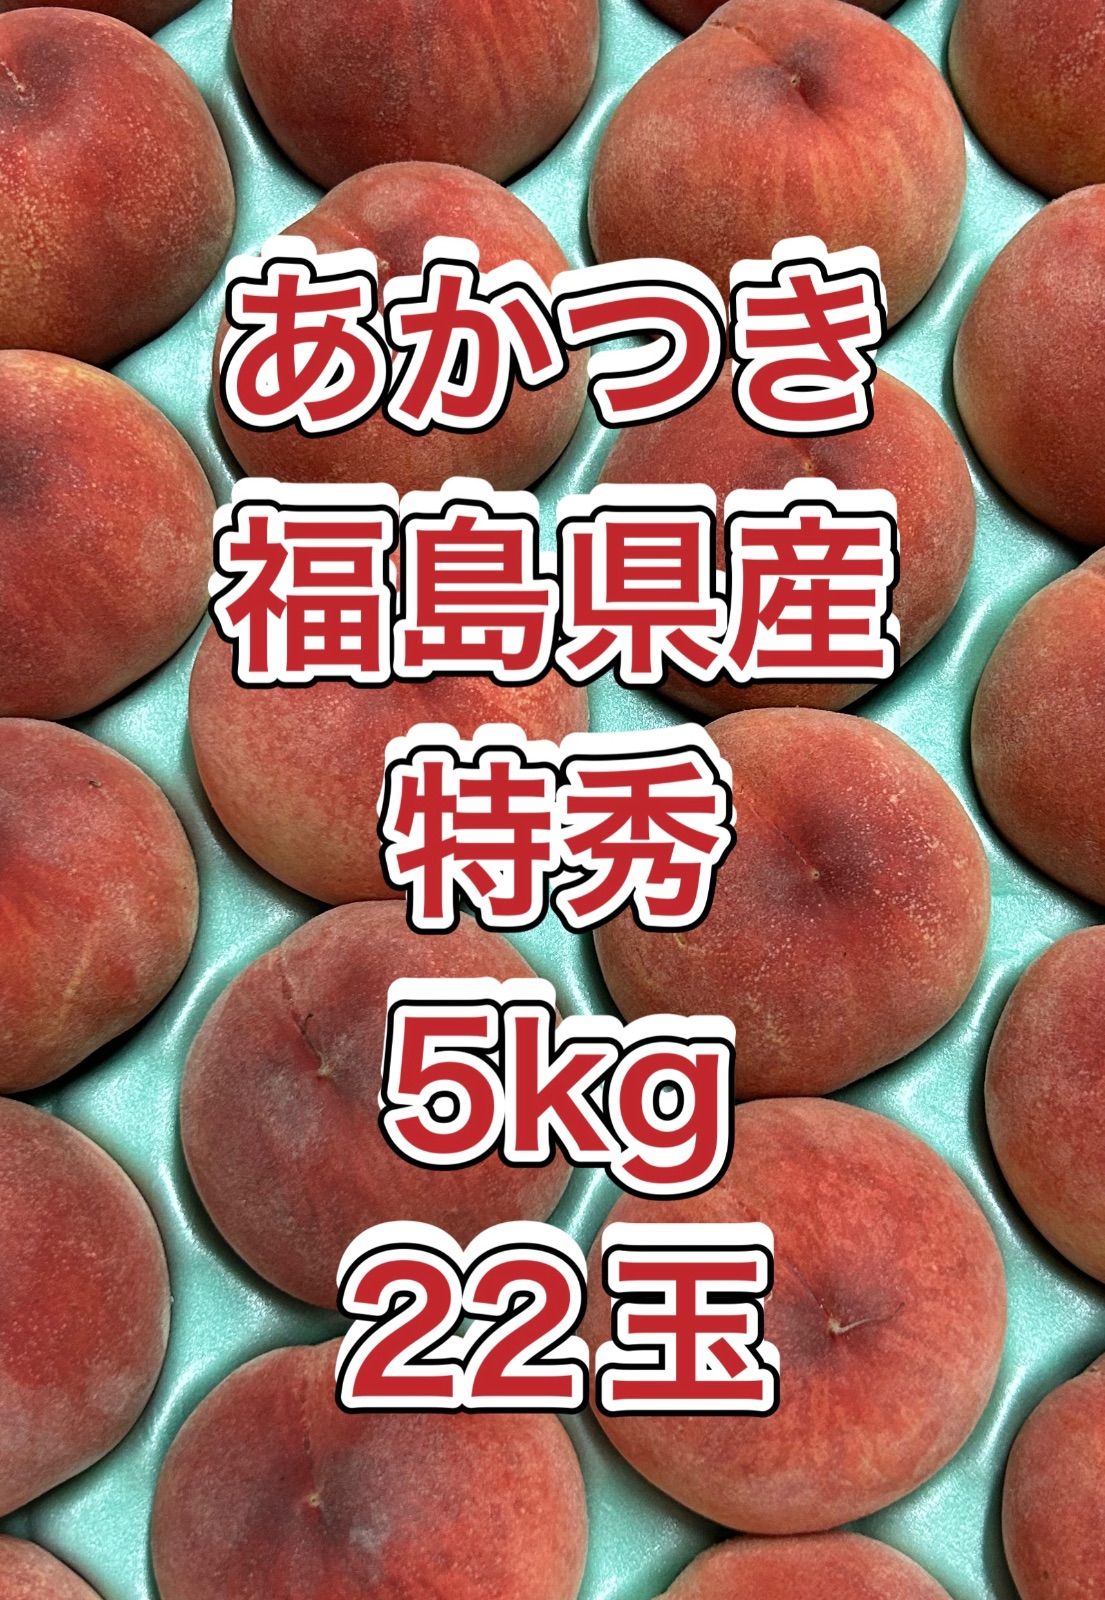 あかつきネオ　福島県産　家庭用傷害果　5kg22玉